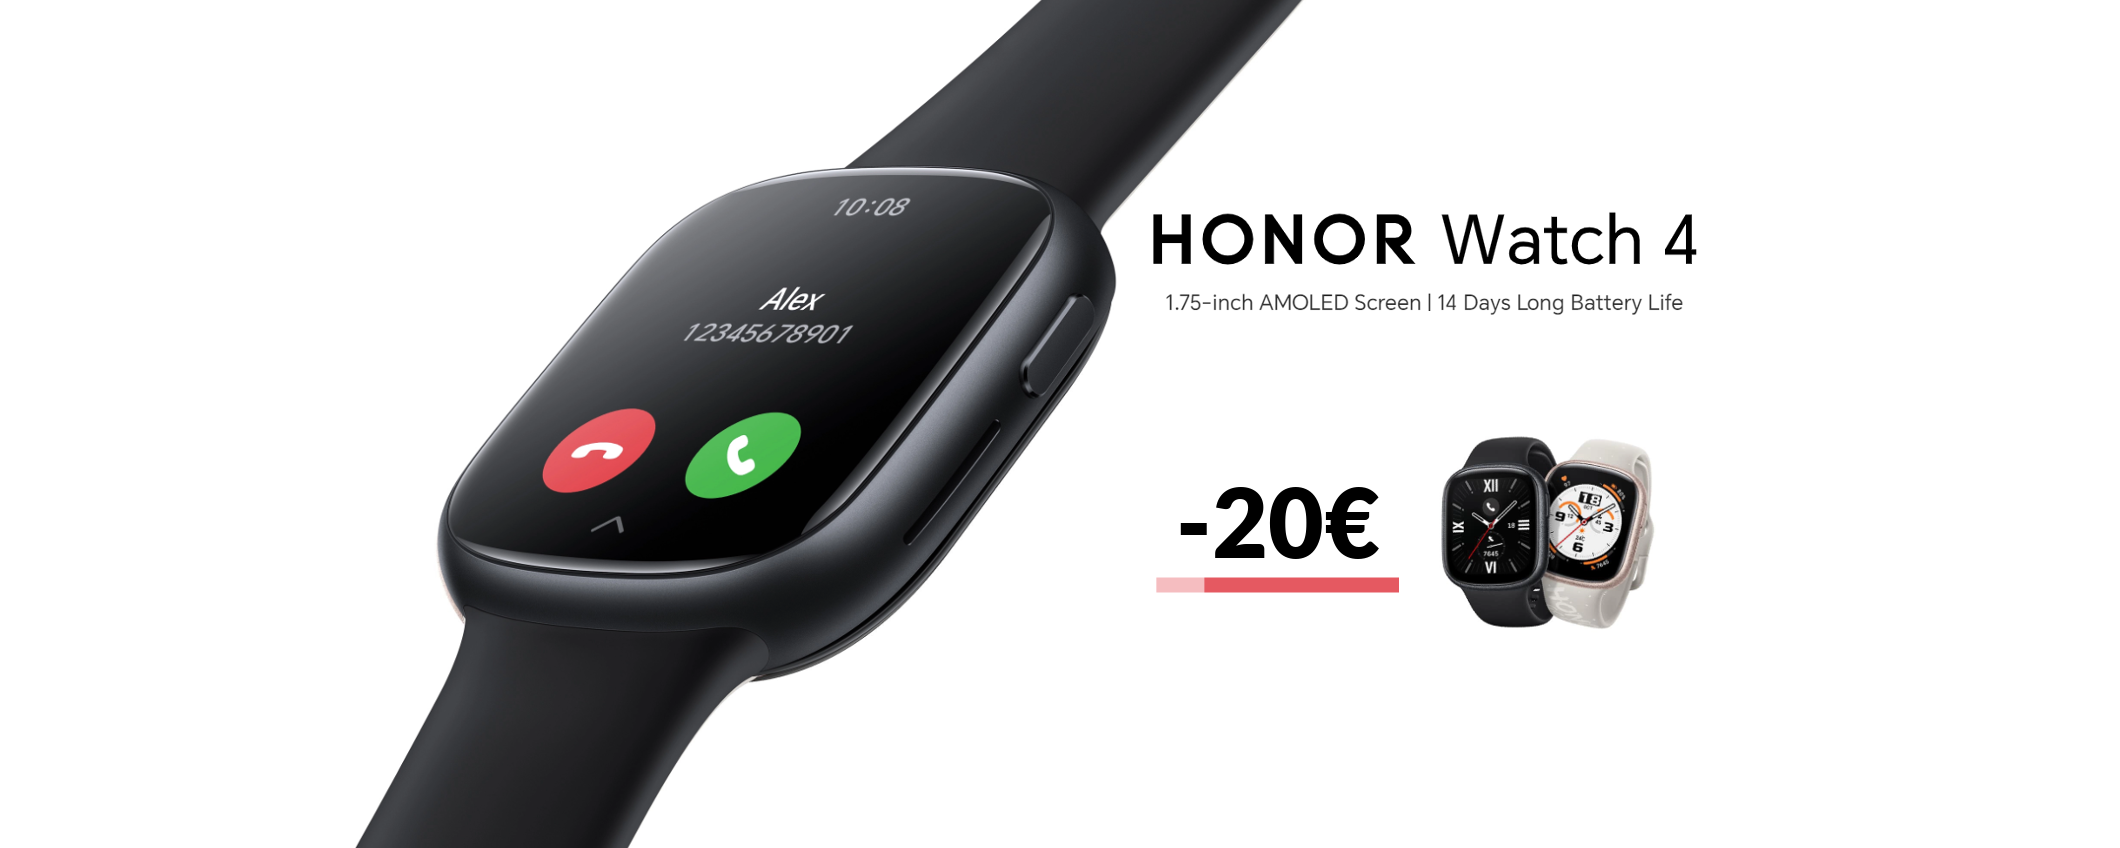 Honor Watch 4 è di nuovo in SCONTO: puoi telefonare dal polso